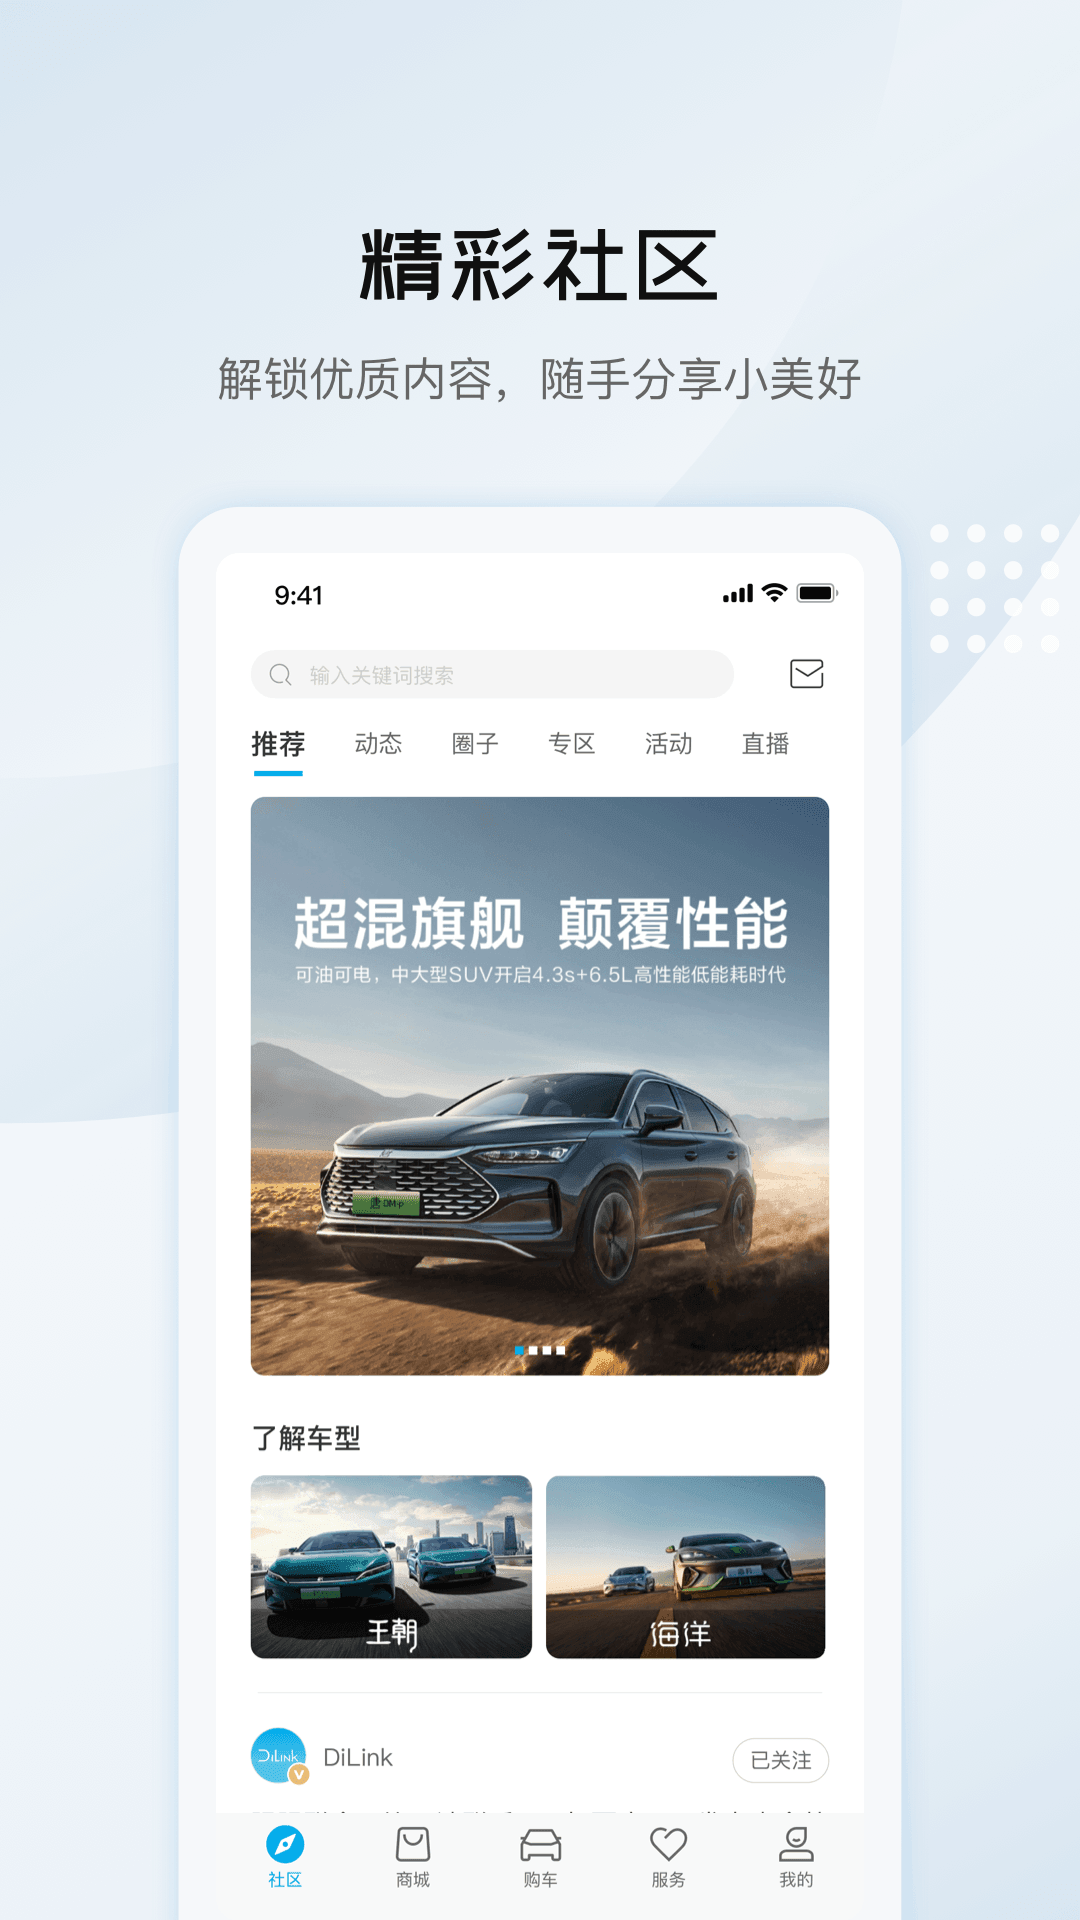 全新升级 比亚迪汽车 App 正式上线_新闻_新出行